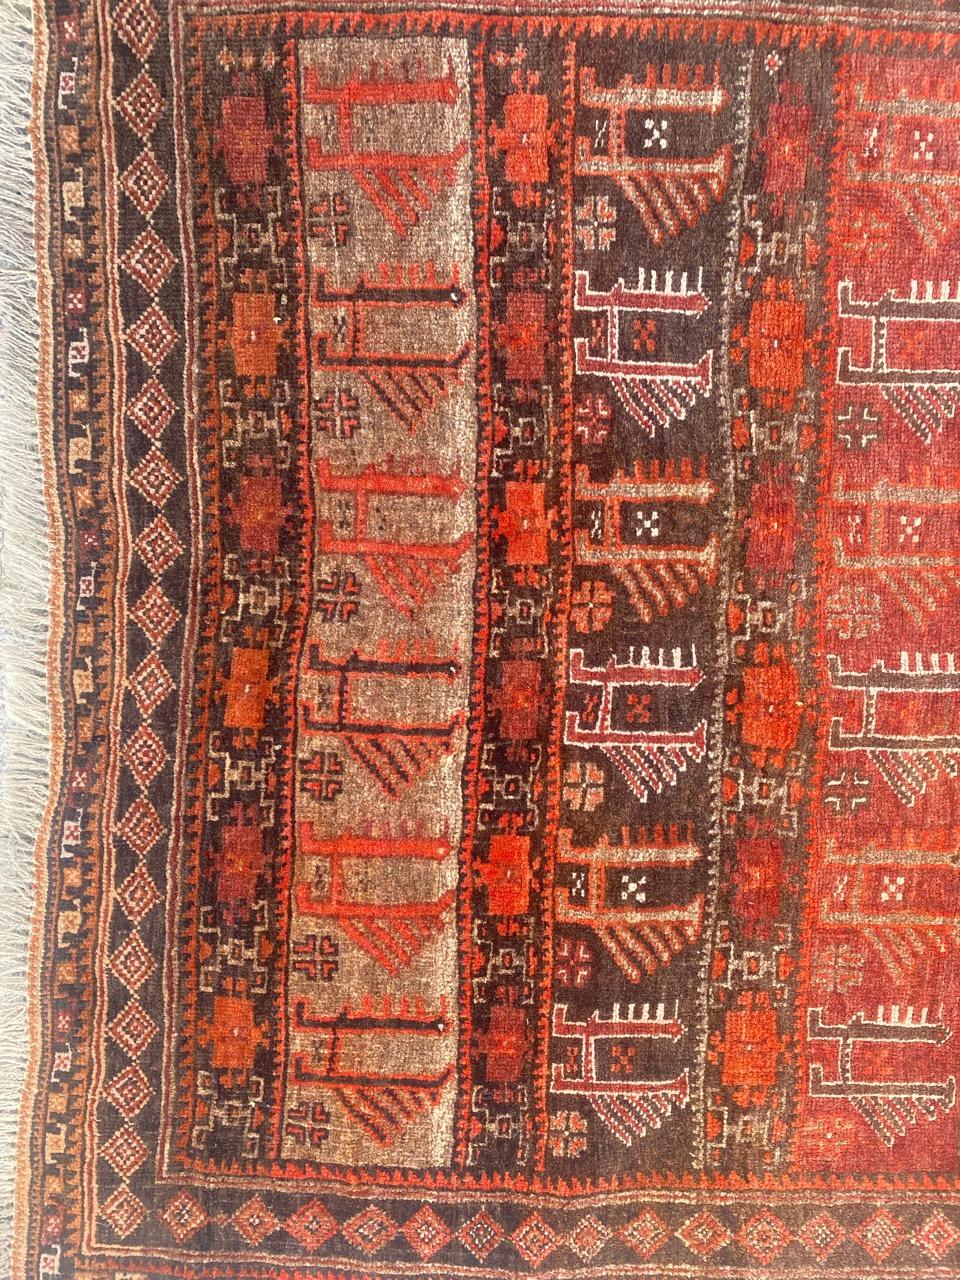 Joli tapis afghan Baluch du milieu du siècle avec un design tribal et de belles couleurs, entièrement et finement noué à la main avec du velours de laine sur une base de laine.

✨✨✨
